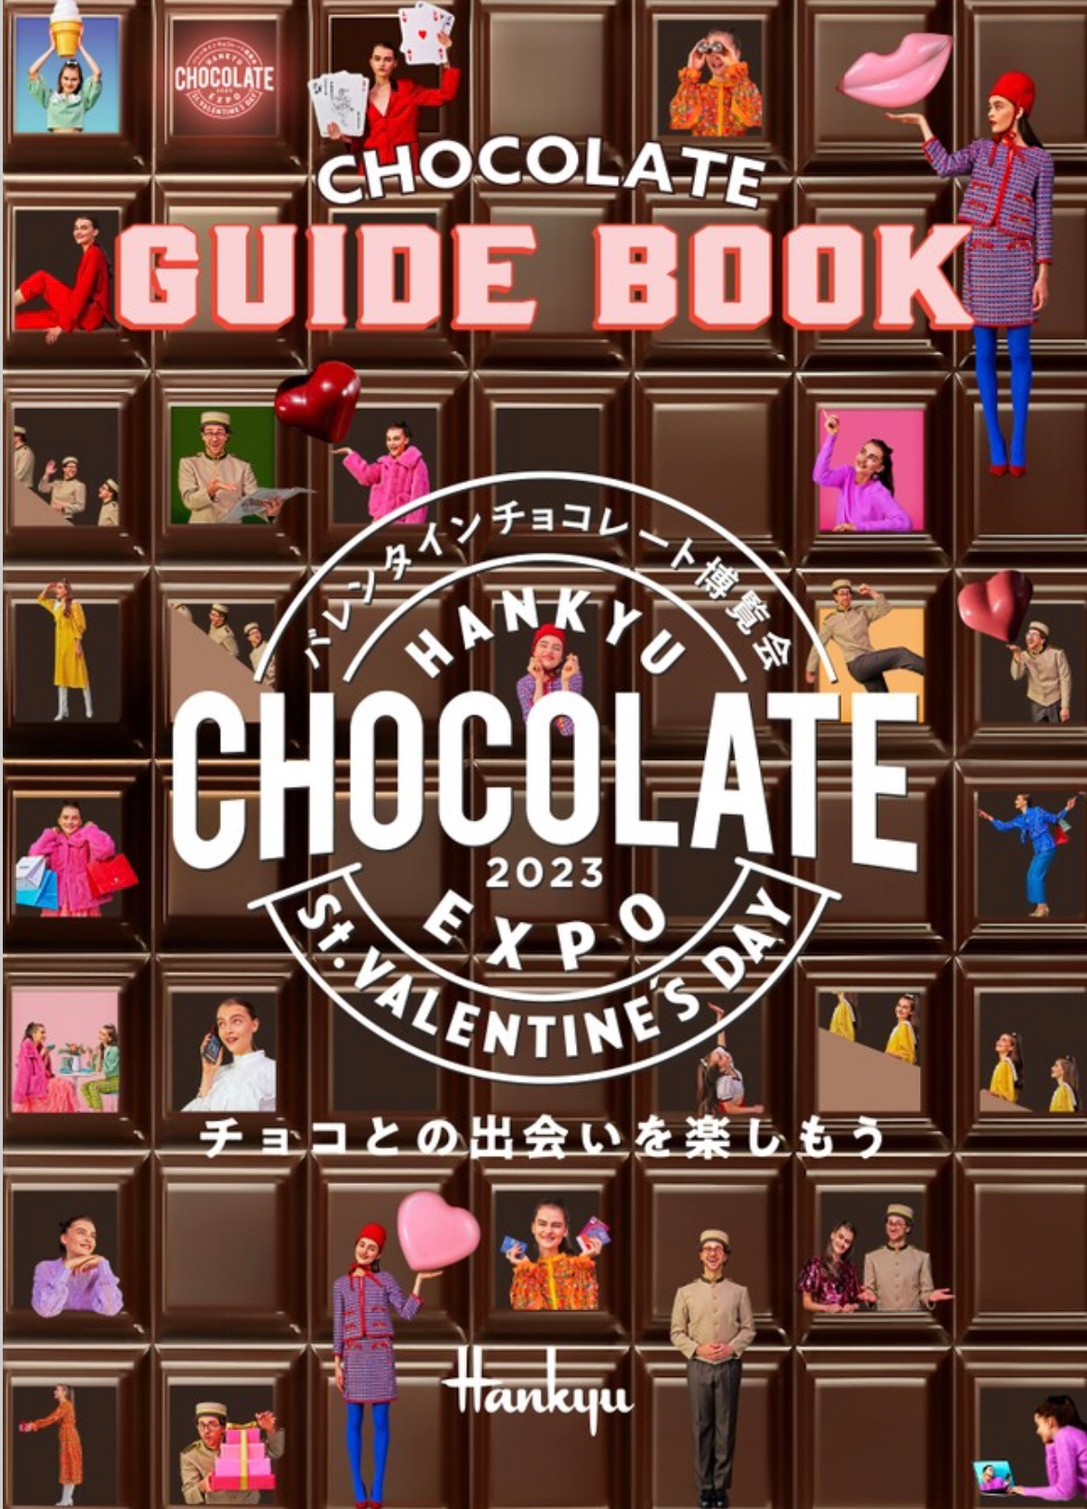 阪急梅田のパンフレットに掲載されました。 バレンタインチョコレート博覧会2023 ガイドブック